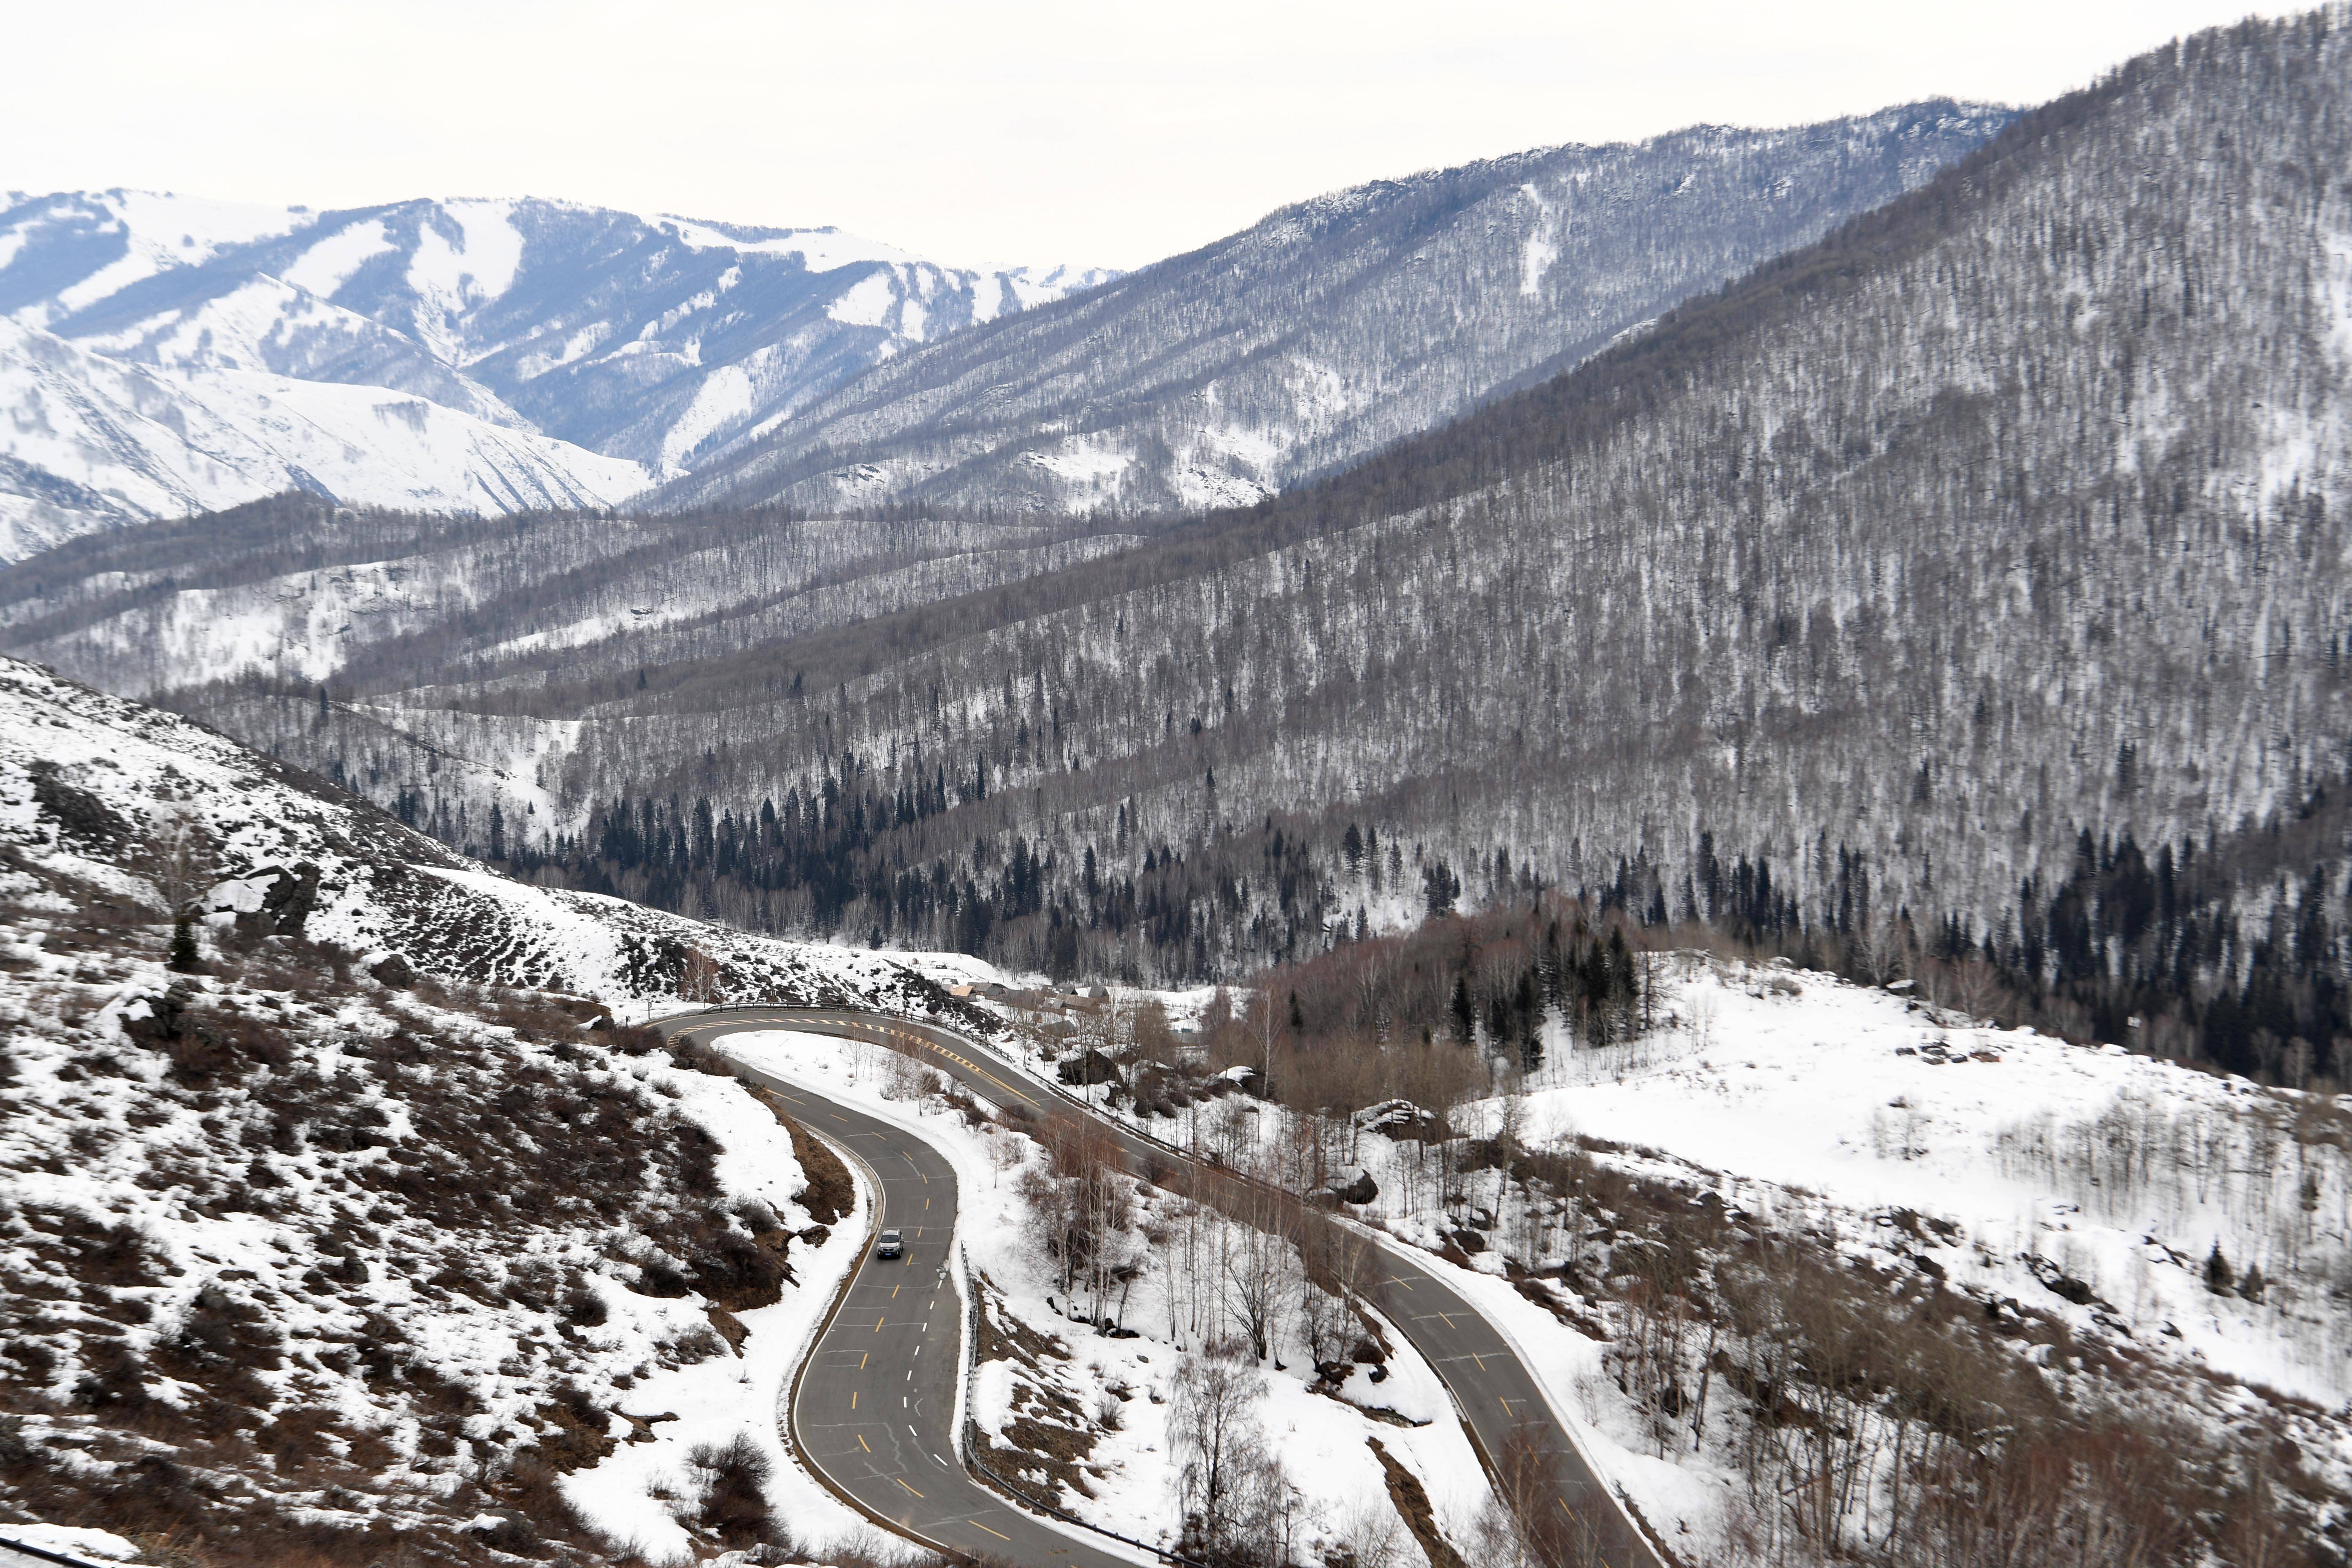 新疆阿勒泰打造冰雪旅游新高地